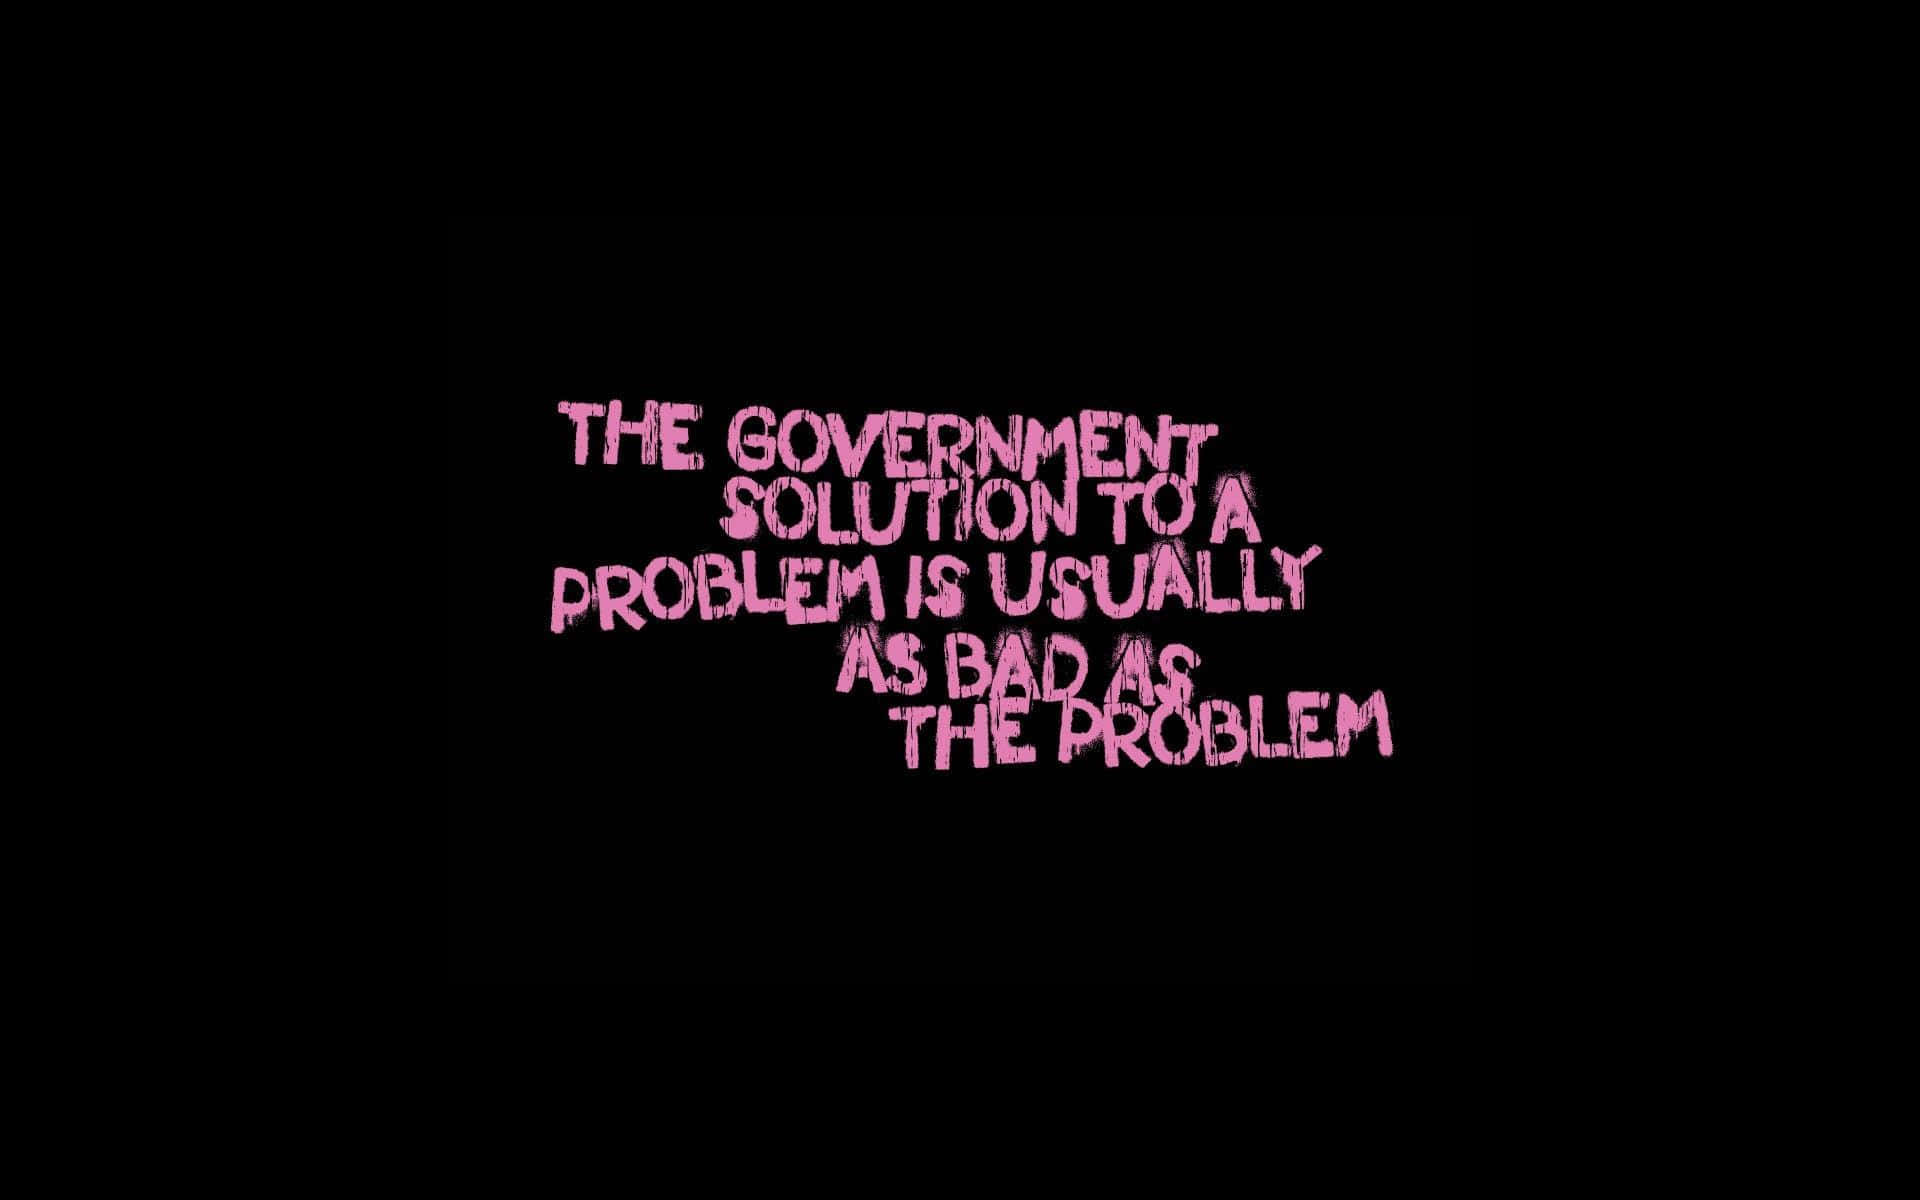 Den regerings løsning på et problem er normalt dårlig er problemet Wallpaper